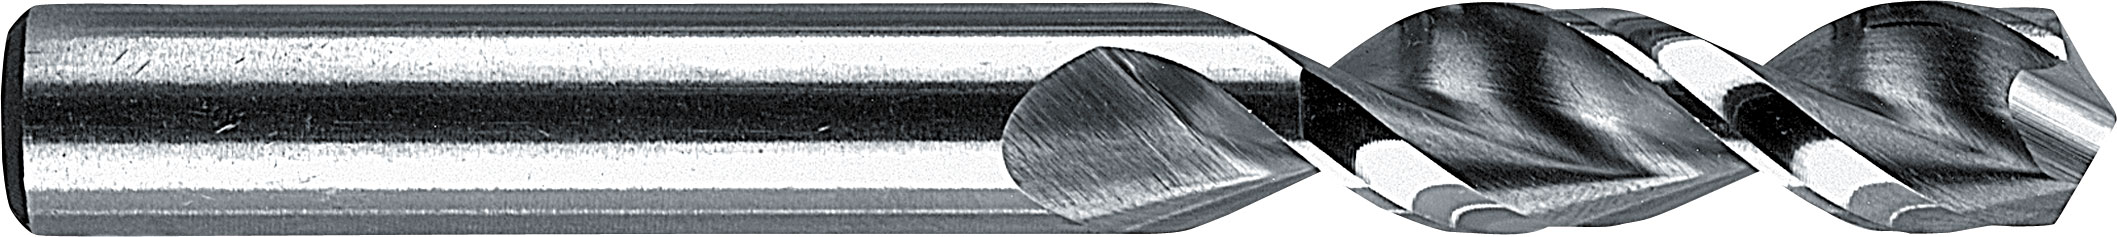 Coffret métal 21 forets 156 HSS-Co 5% UF-L extra courts Ø 2 à 10 par 0.5 mm + 3.3 mm + 4.2 mm + 6.8 mm + 10.2 mm 